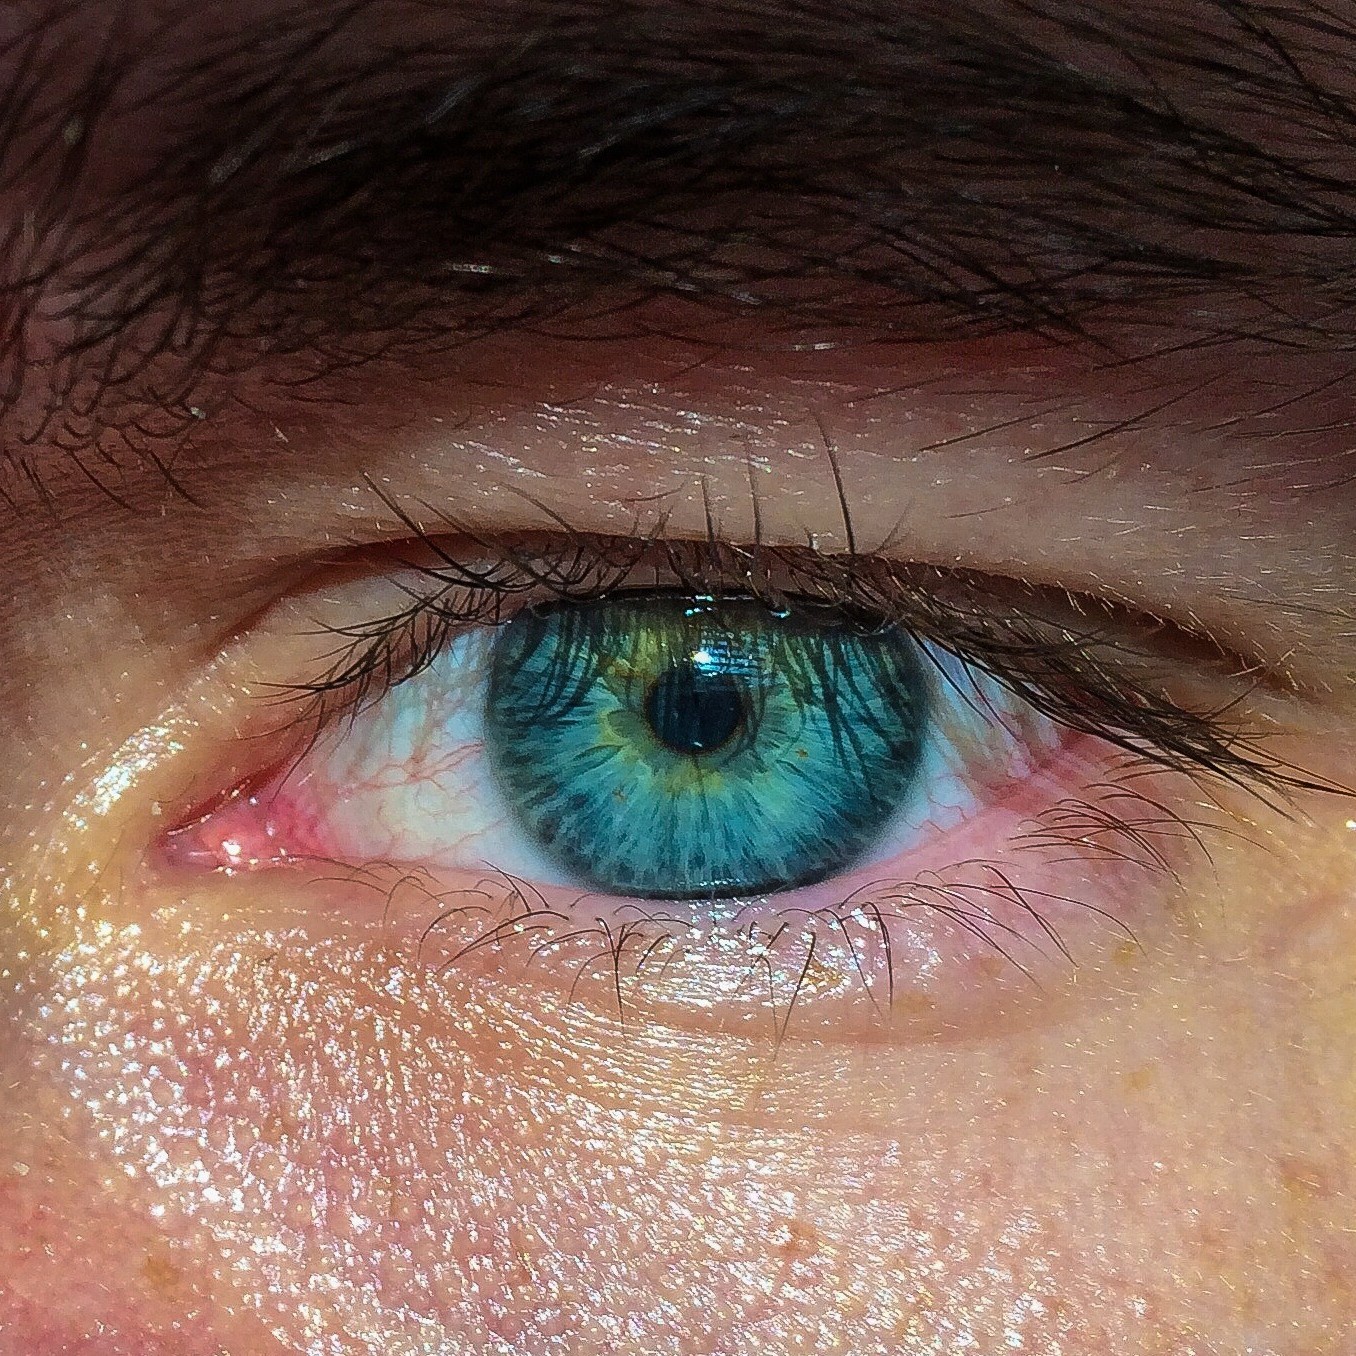 Его глаза напротив цвета моря. Зелёно-голубые глаза. Голубо-зеленый цвет глаз. Голубой цвет глаз. Глаз человека фото.